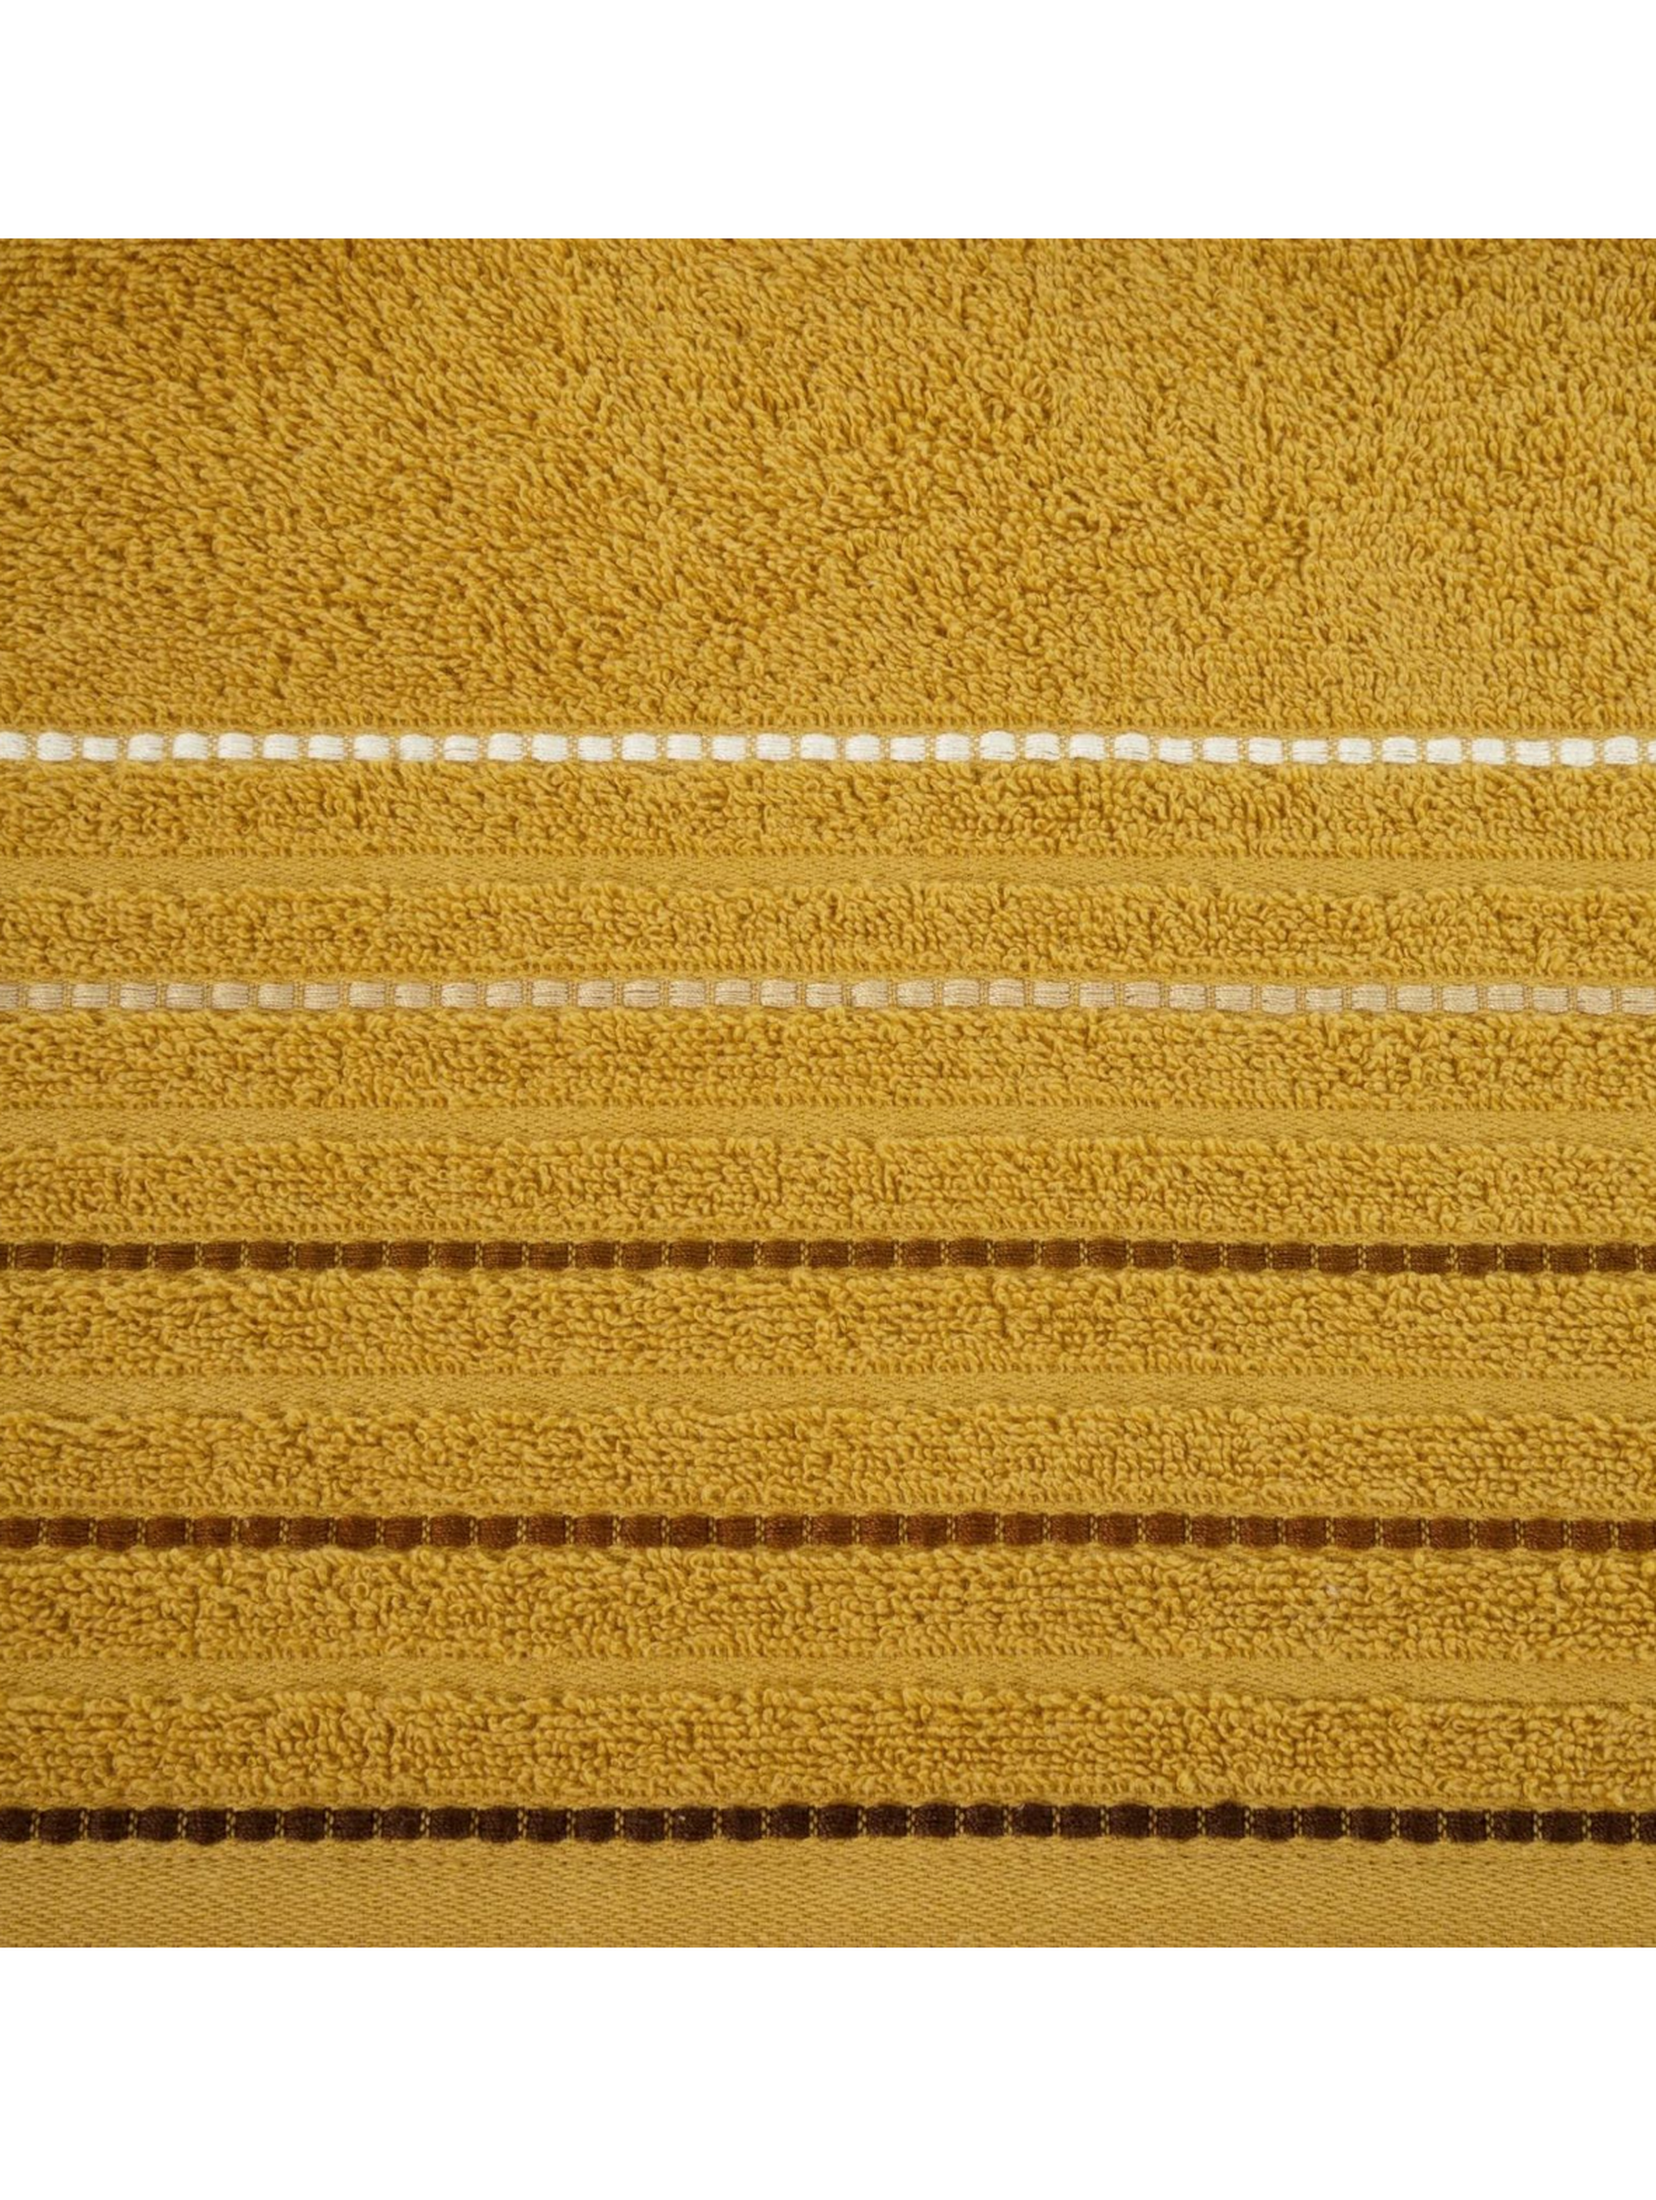 Ręcznik d91 iza (05) 70x140 cm musztardowy